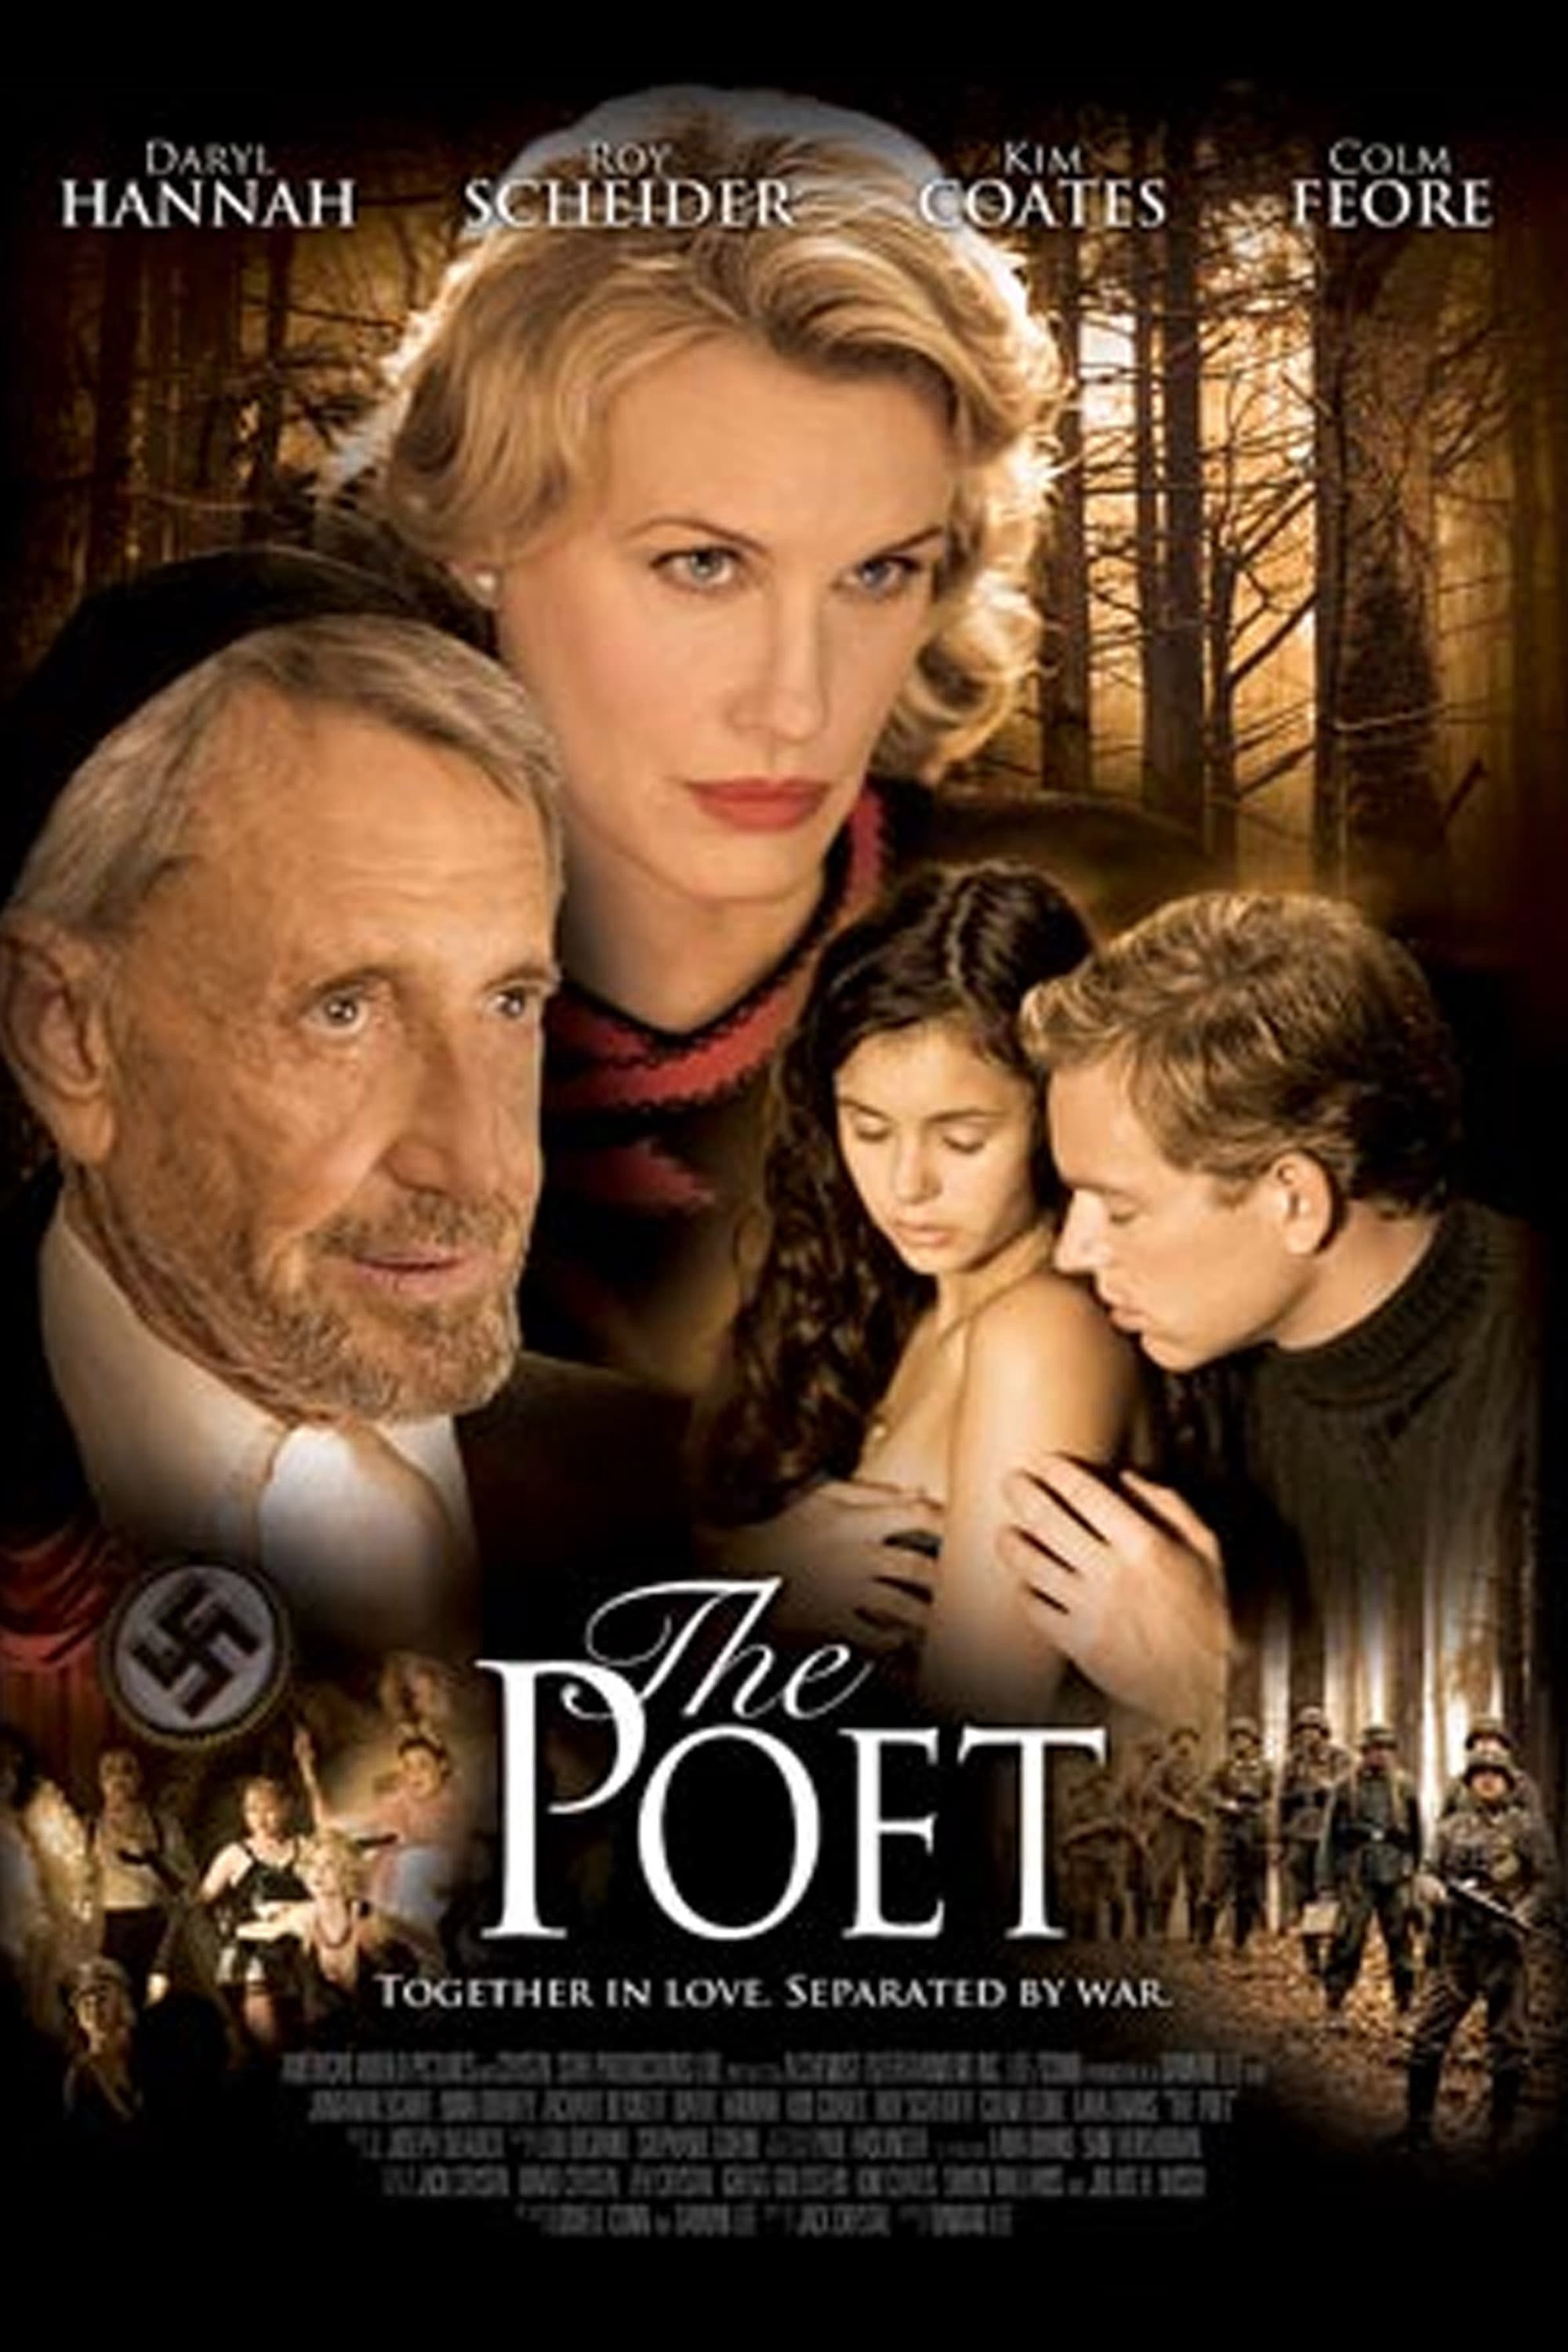 The Poet 2007